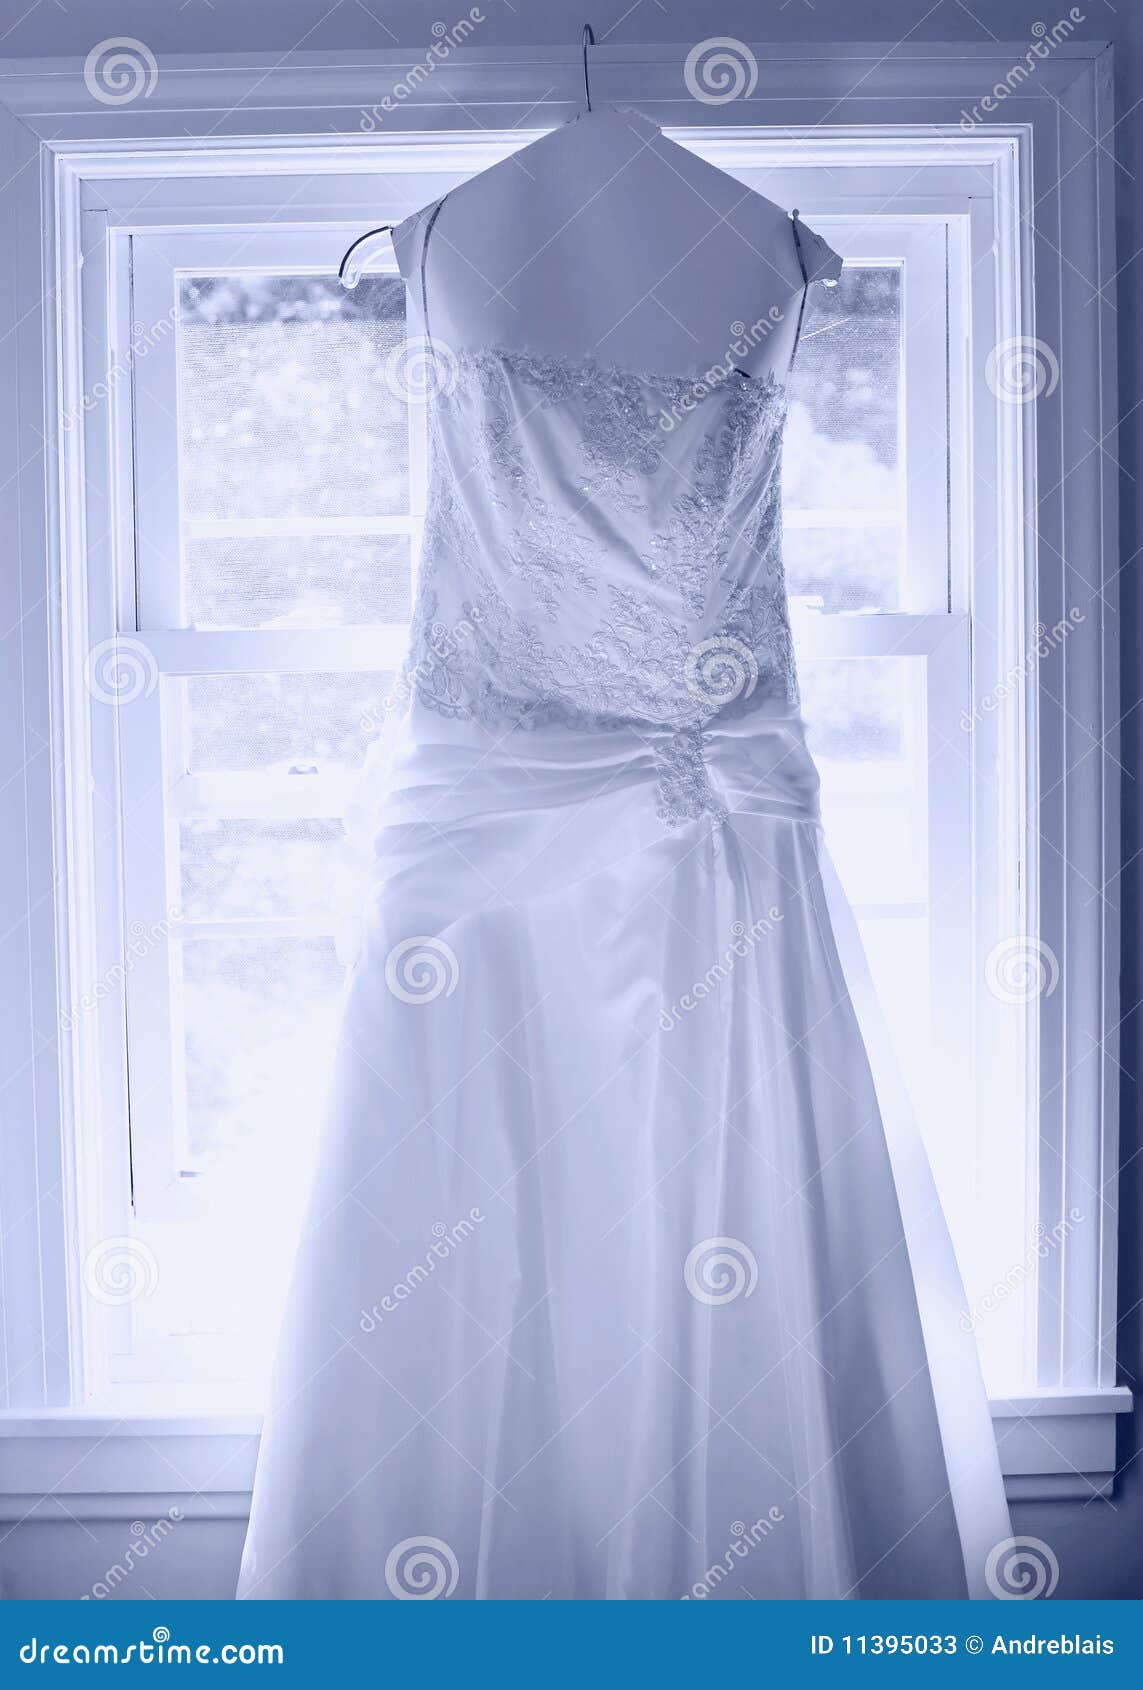 Wedding dress stock image. Image of occasion, matrimony - 11395033